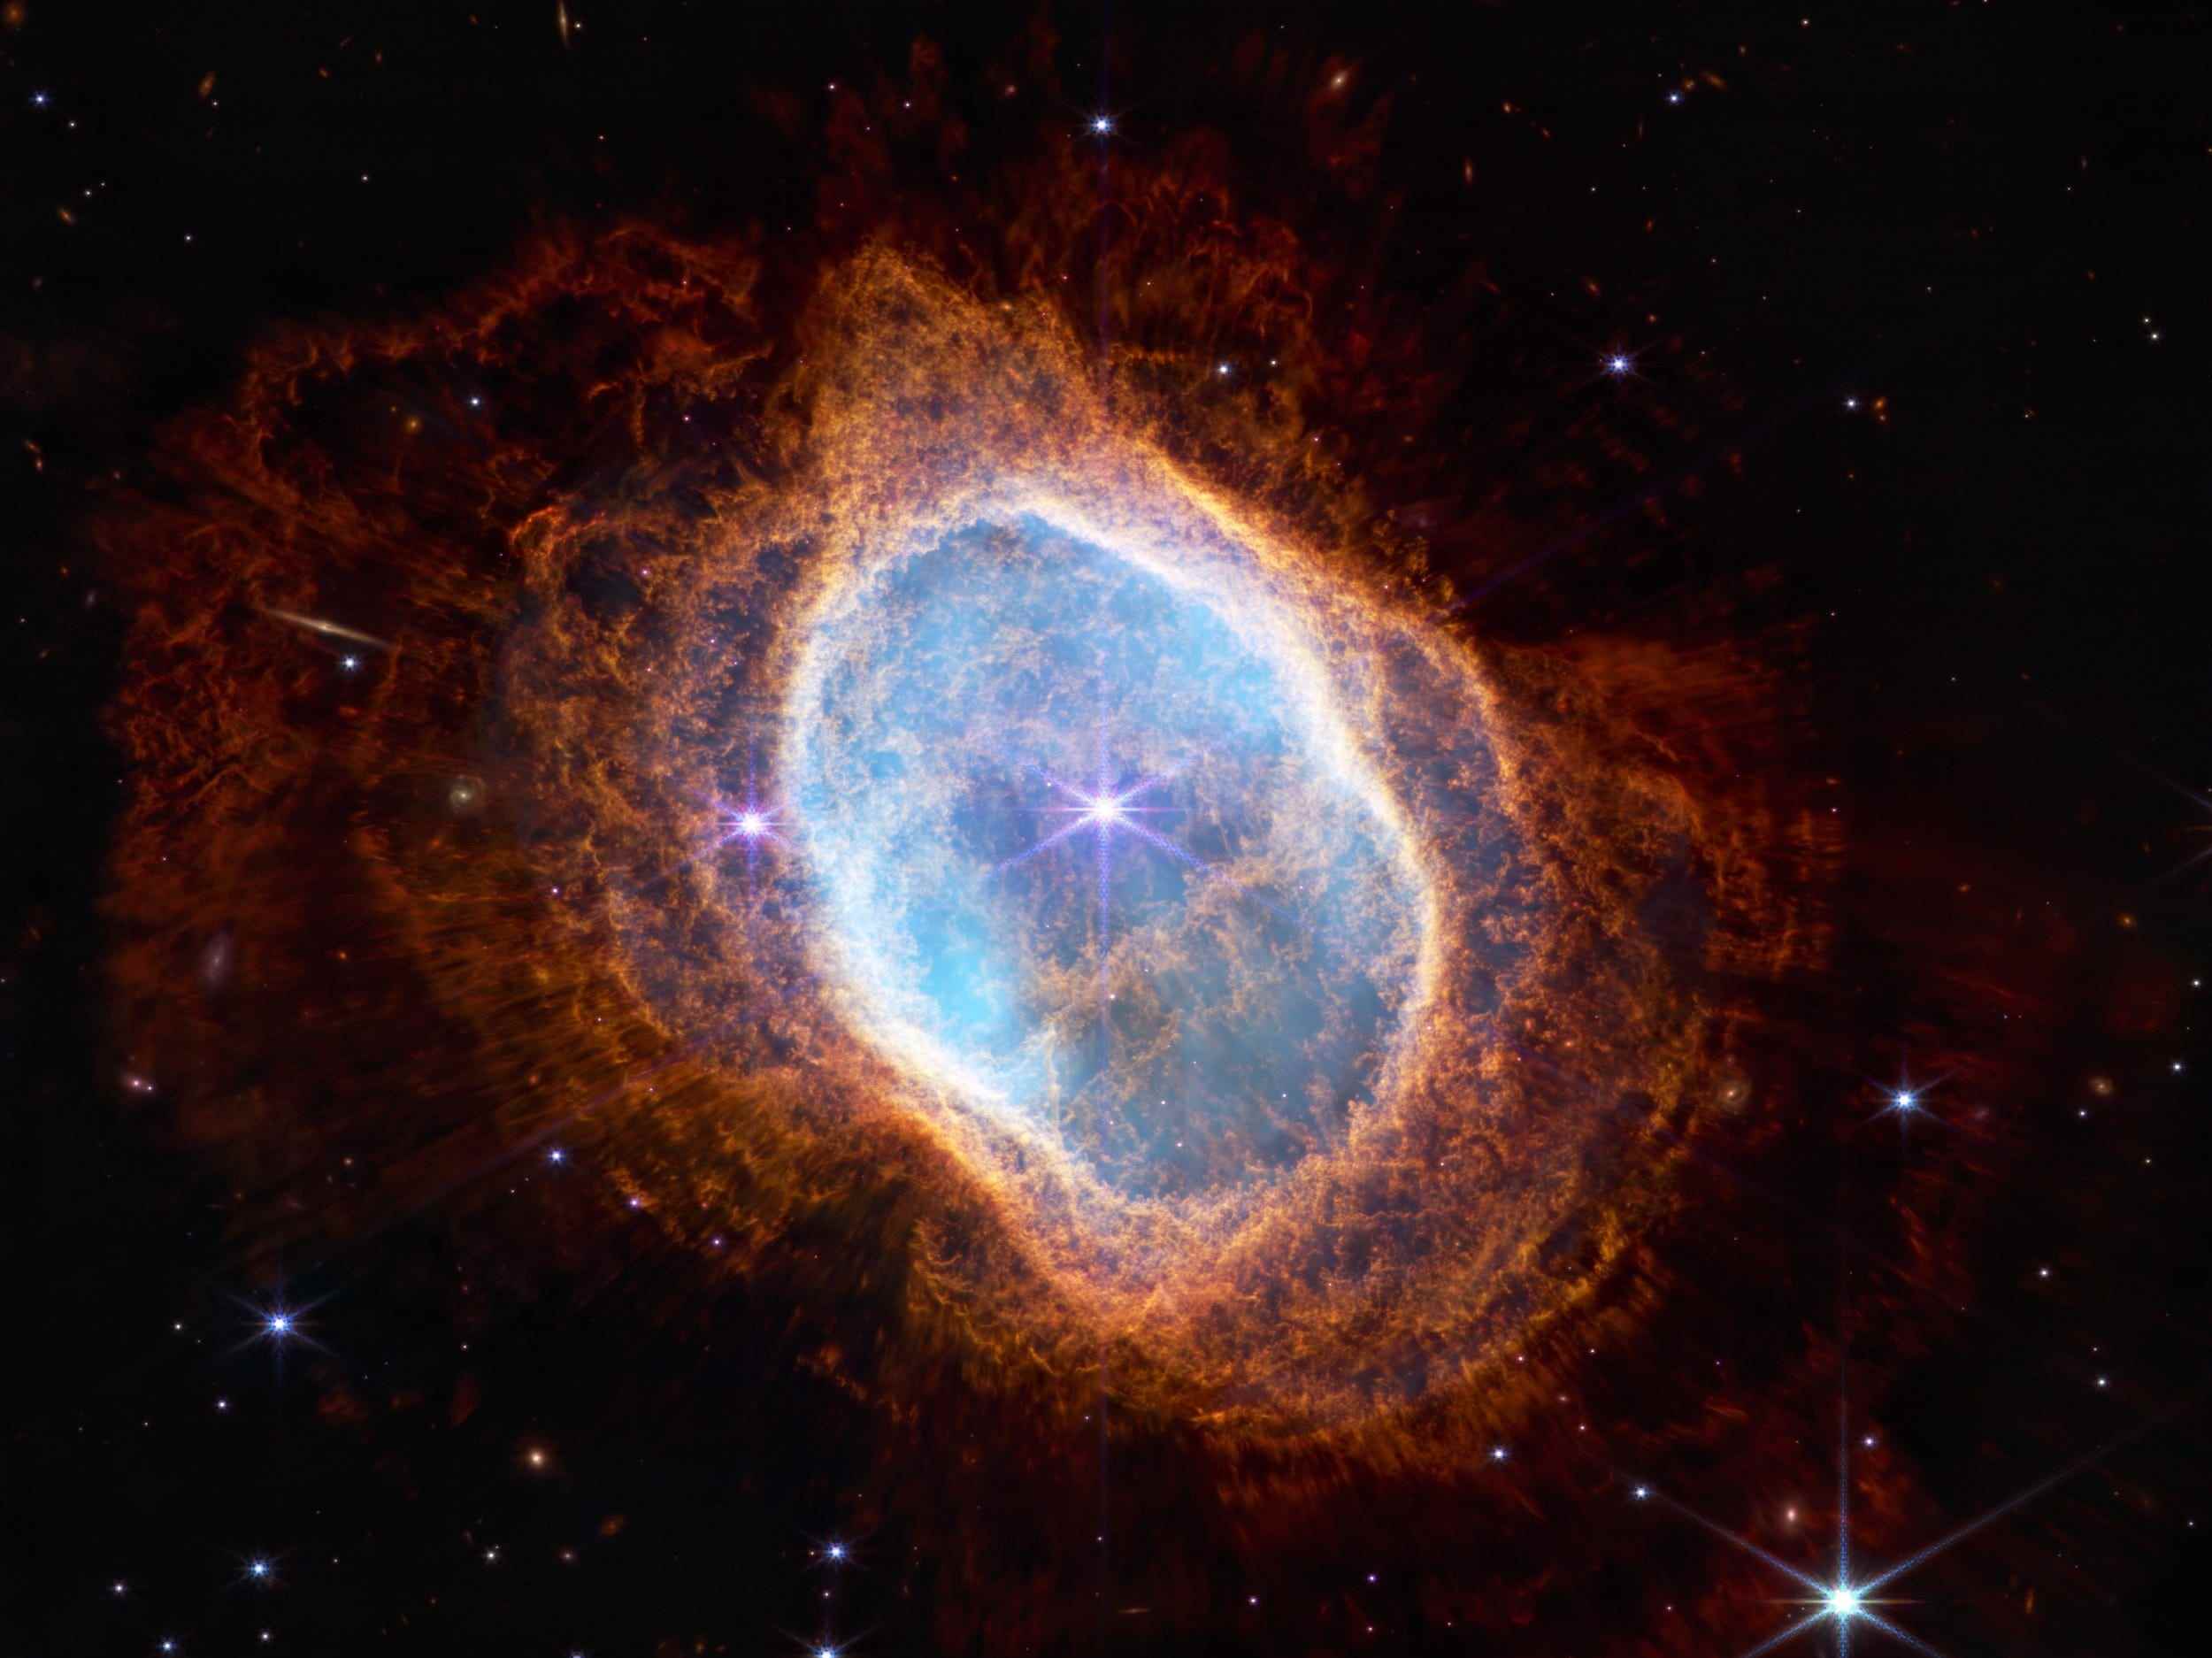 südlicher ringnebel infrarotblasen aus buntem gas und staub umkreisen zwei sterne